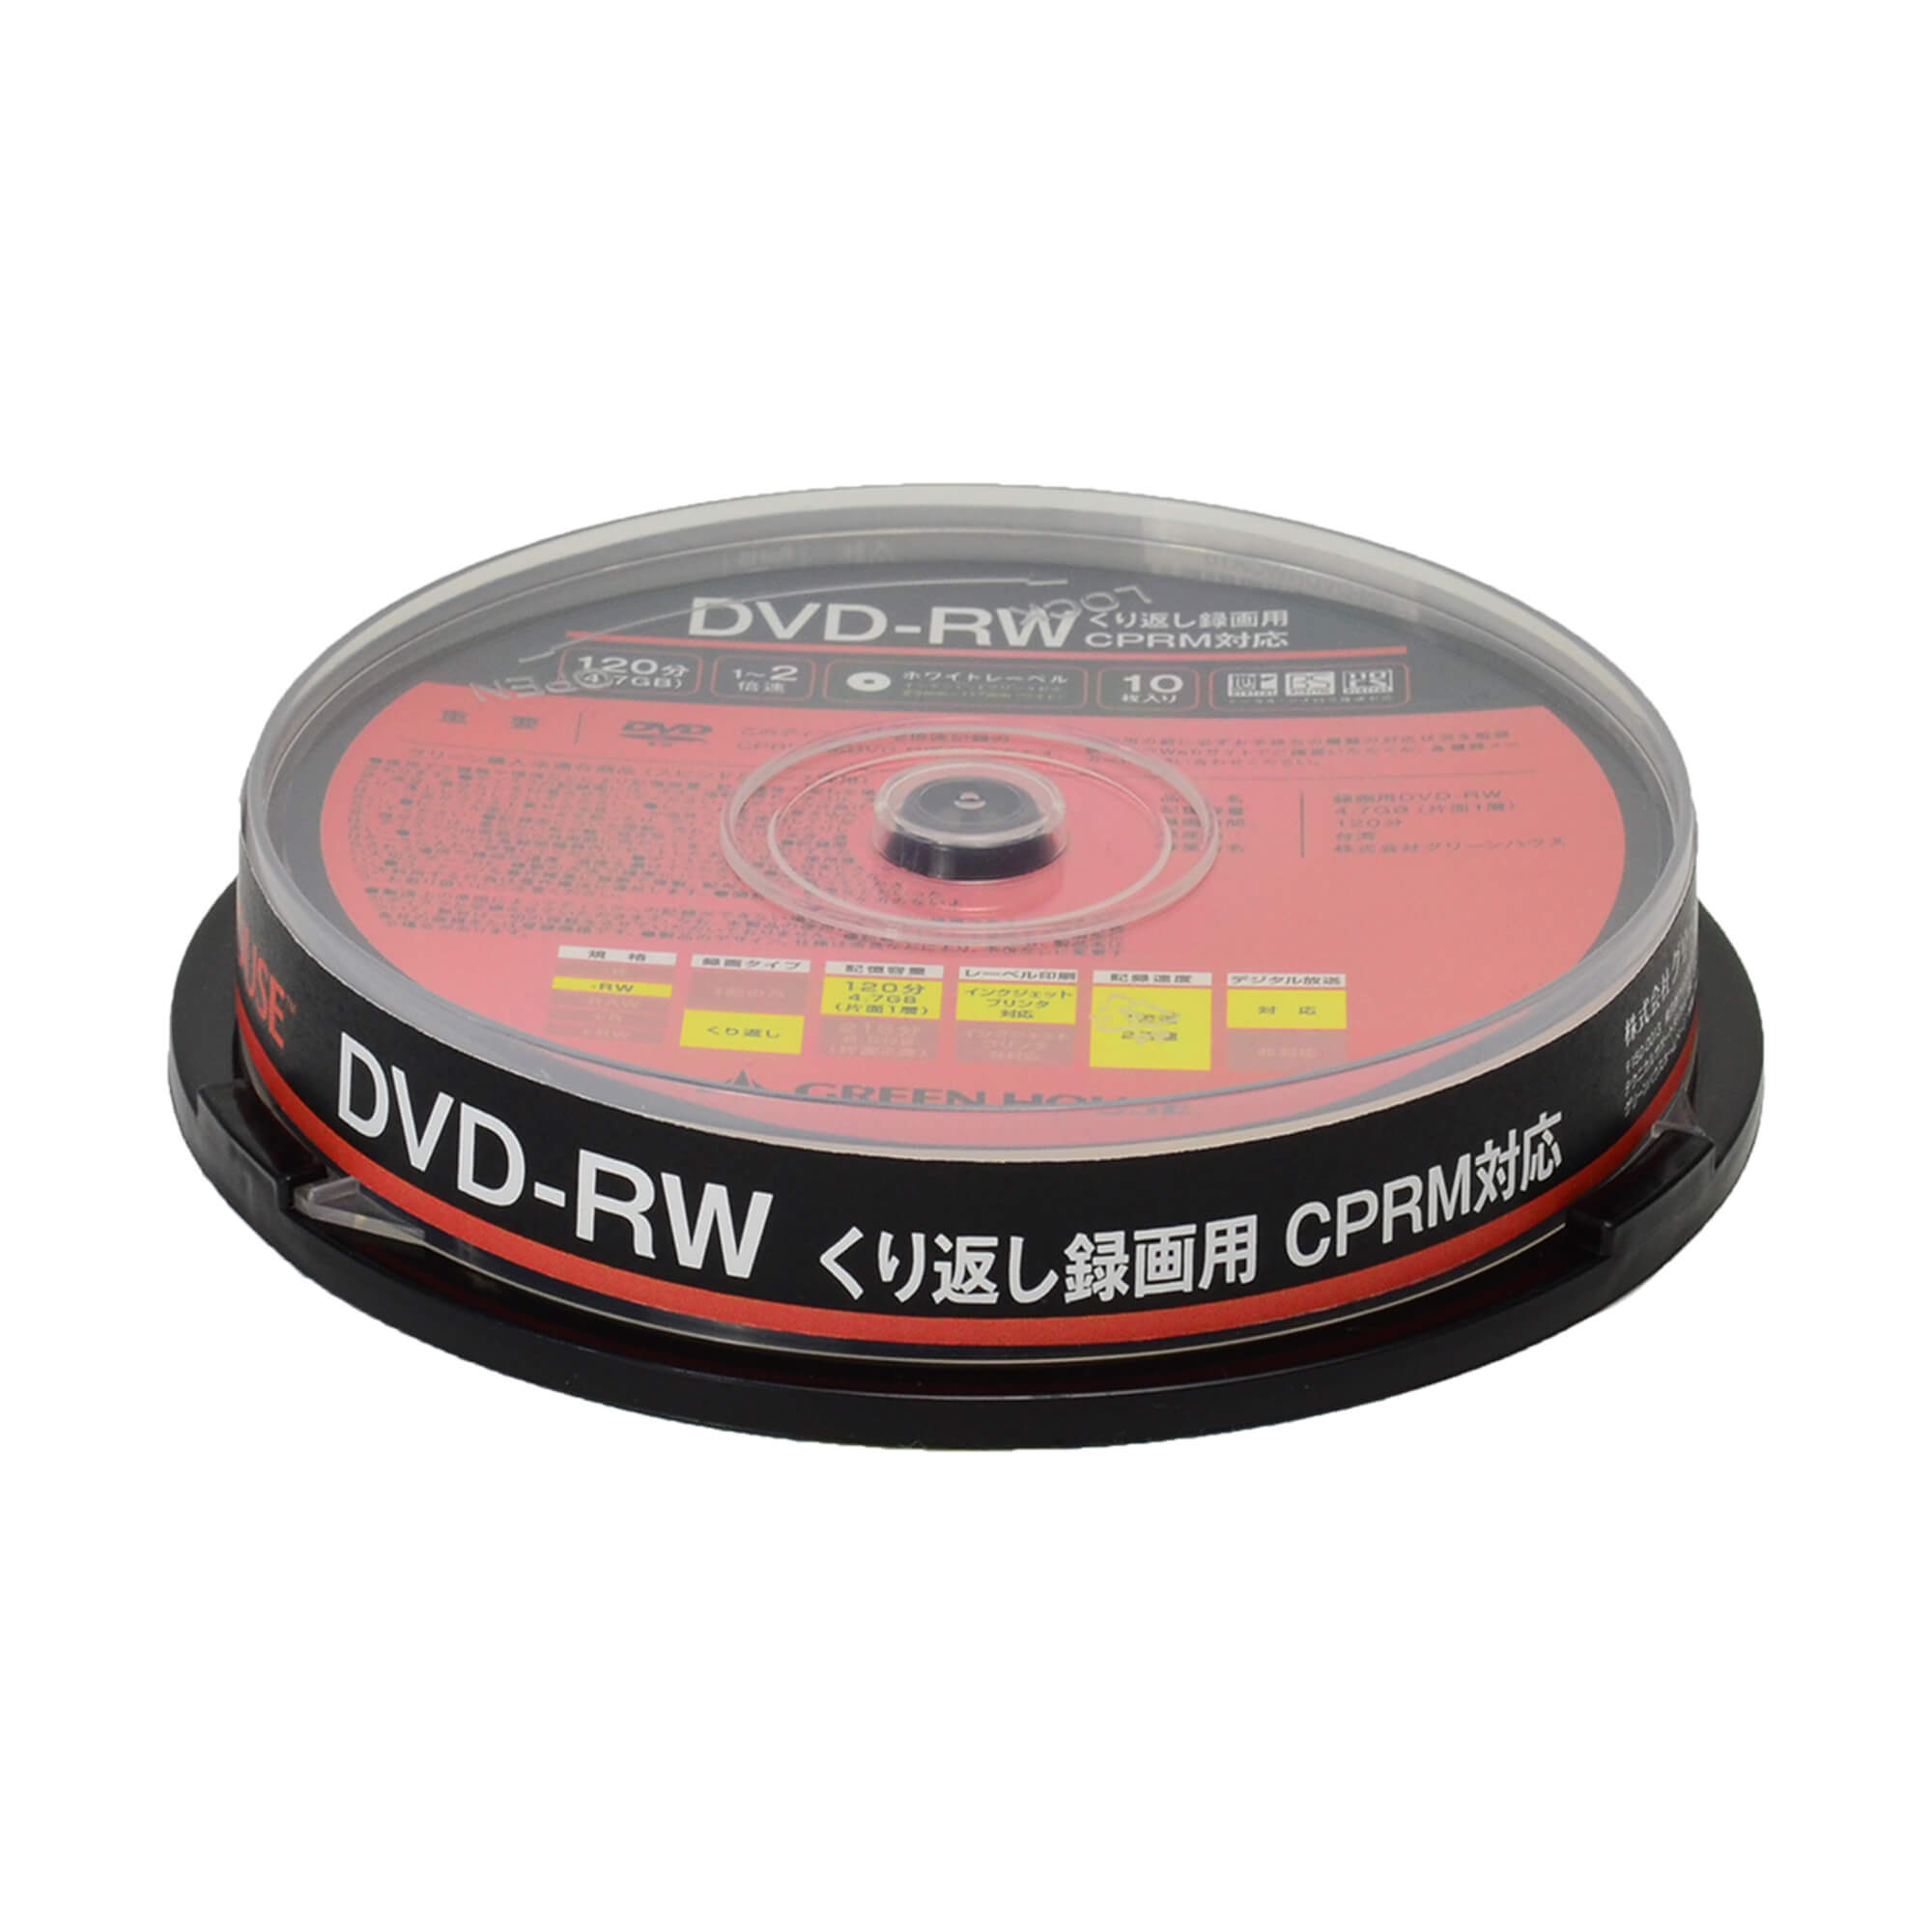 DVD-RW, DVD-RW | GH-DVDRWCA10 | GREEN HOUSE グリーンハウス